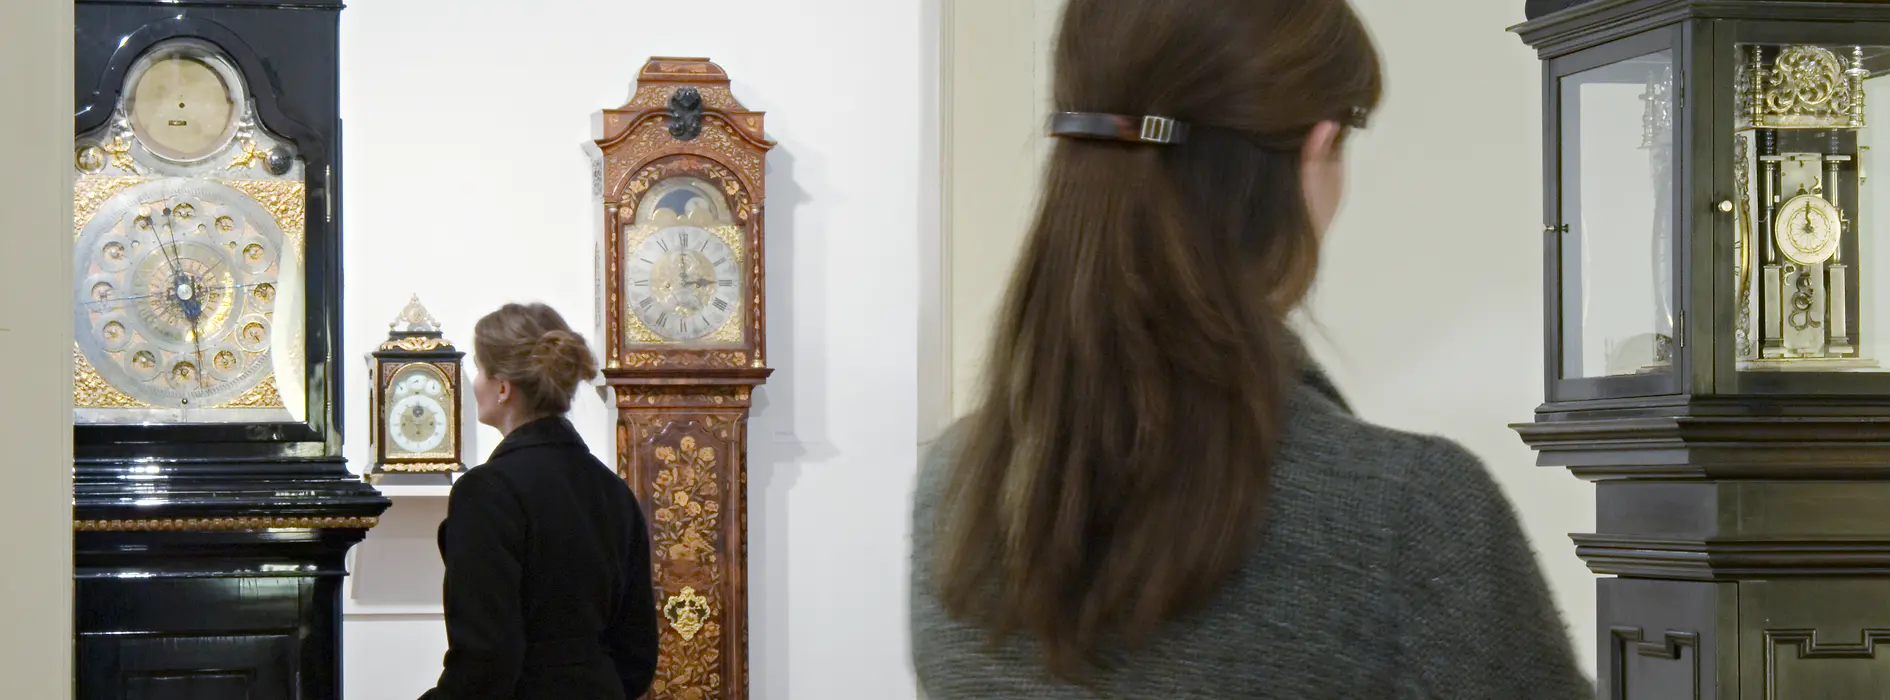 Innenaufnahme des Uhrenmuseums